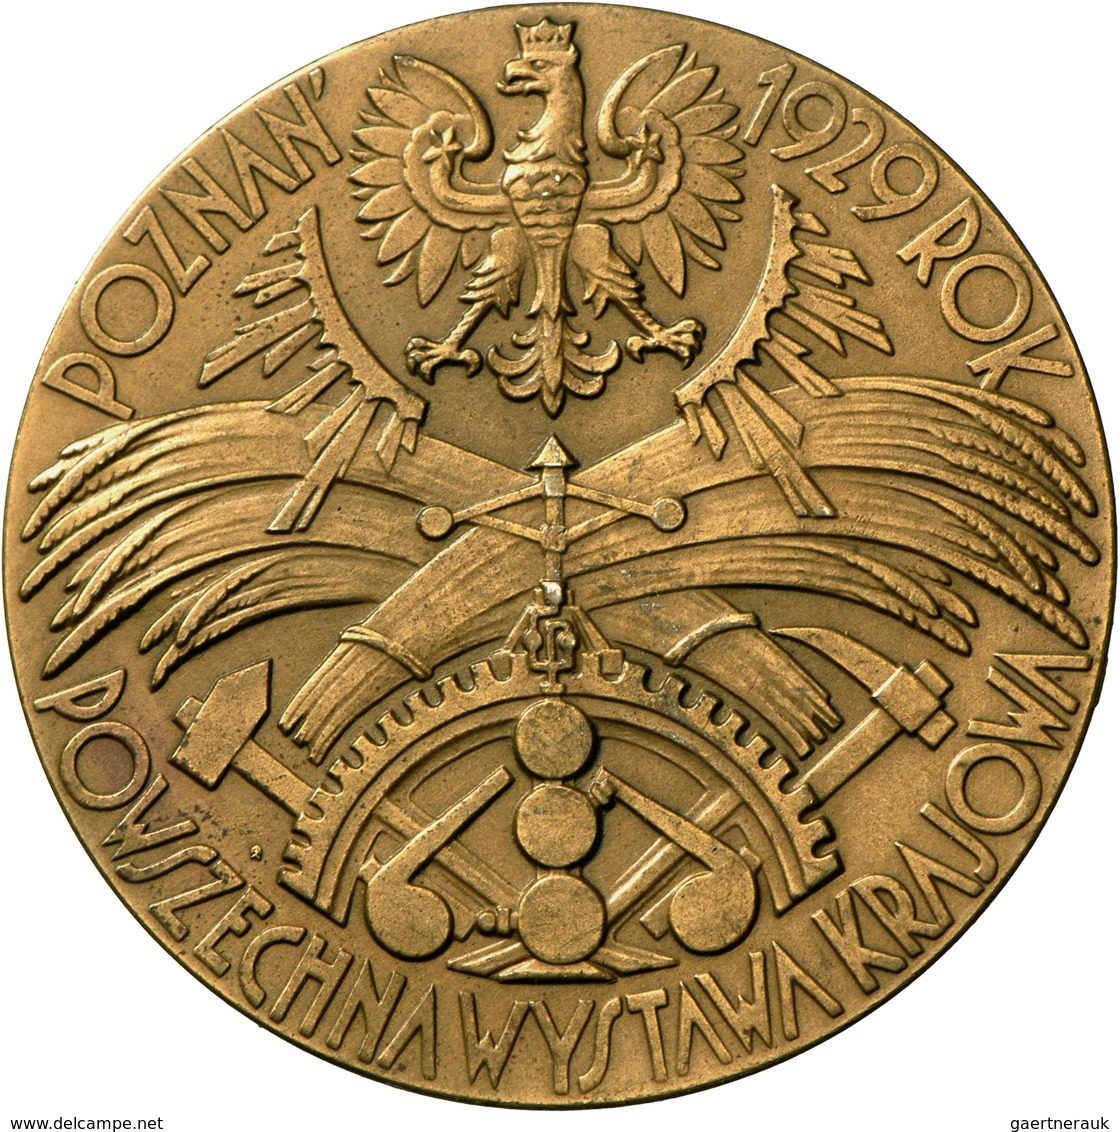 Medaillen Alle Welt: Polen/Posen: Bronzemedaille 1929, Auf Die Polnische Gewerbeausstellung, 55 Mm, - Non Classés